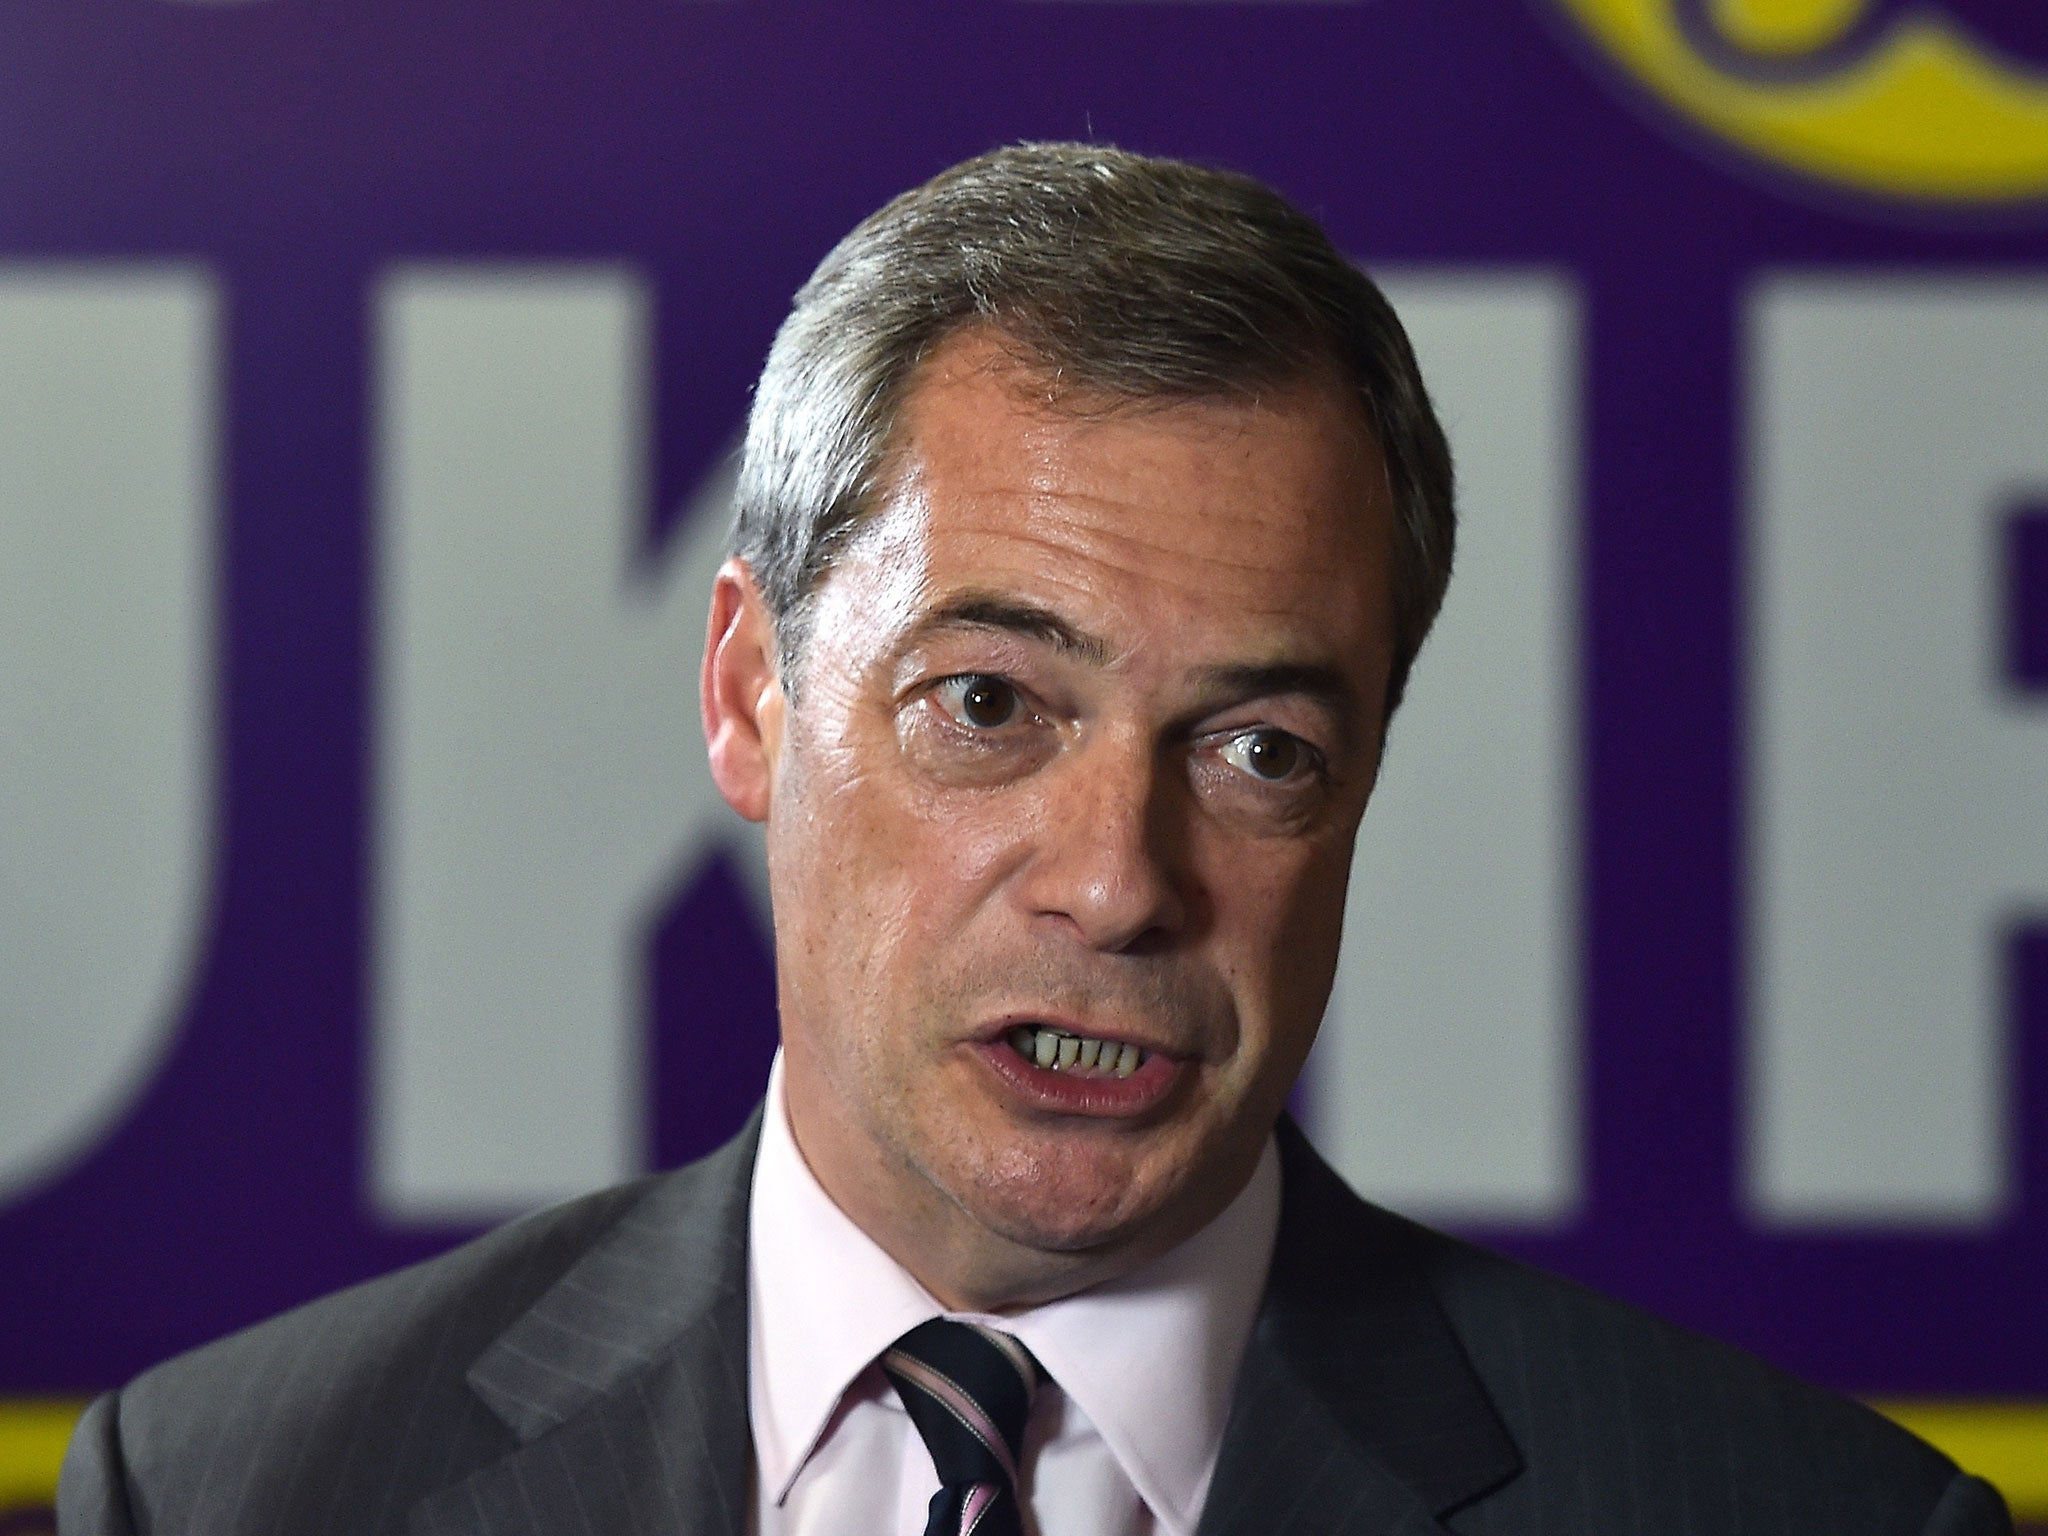 Ukip leader Nigel Farage pictured in November